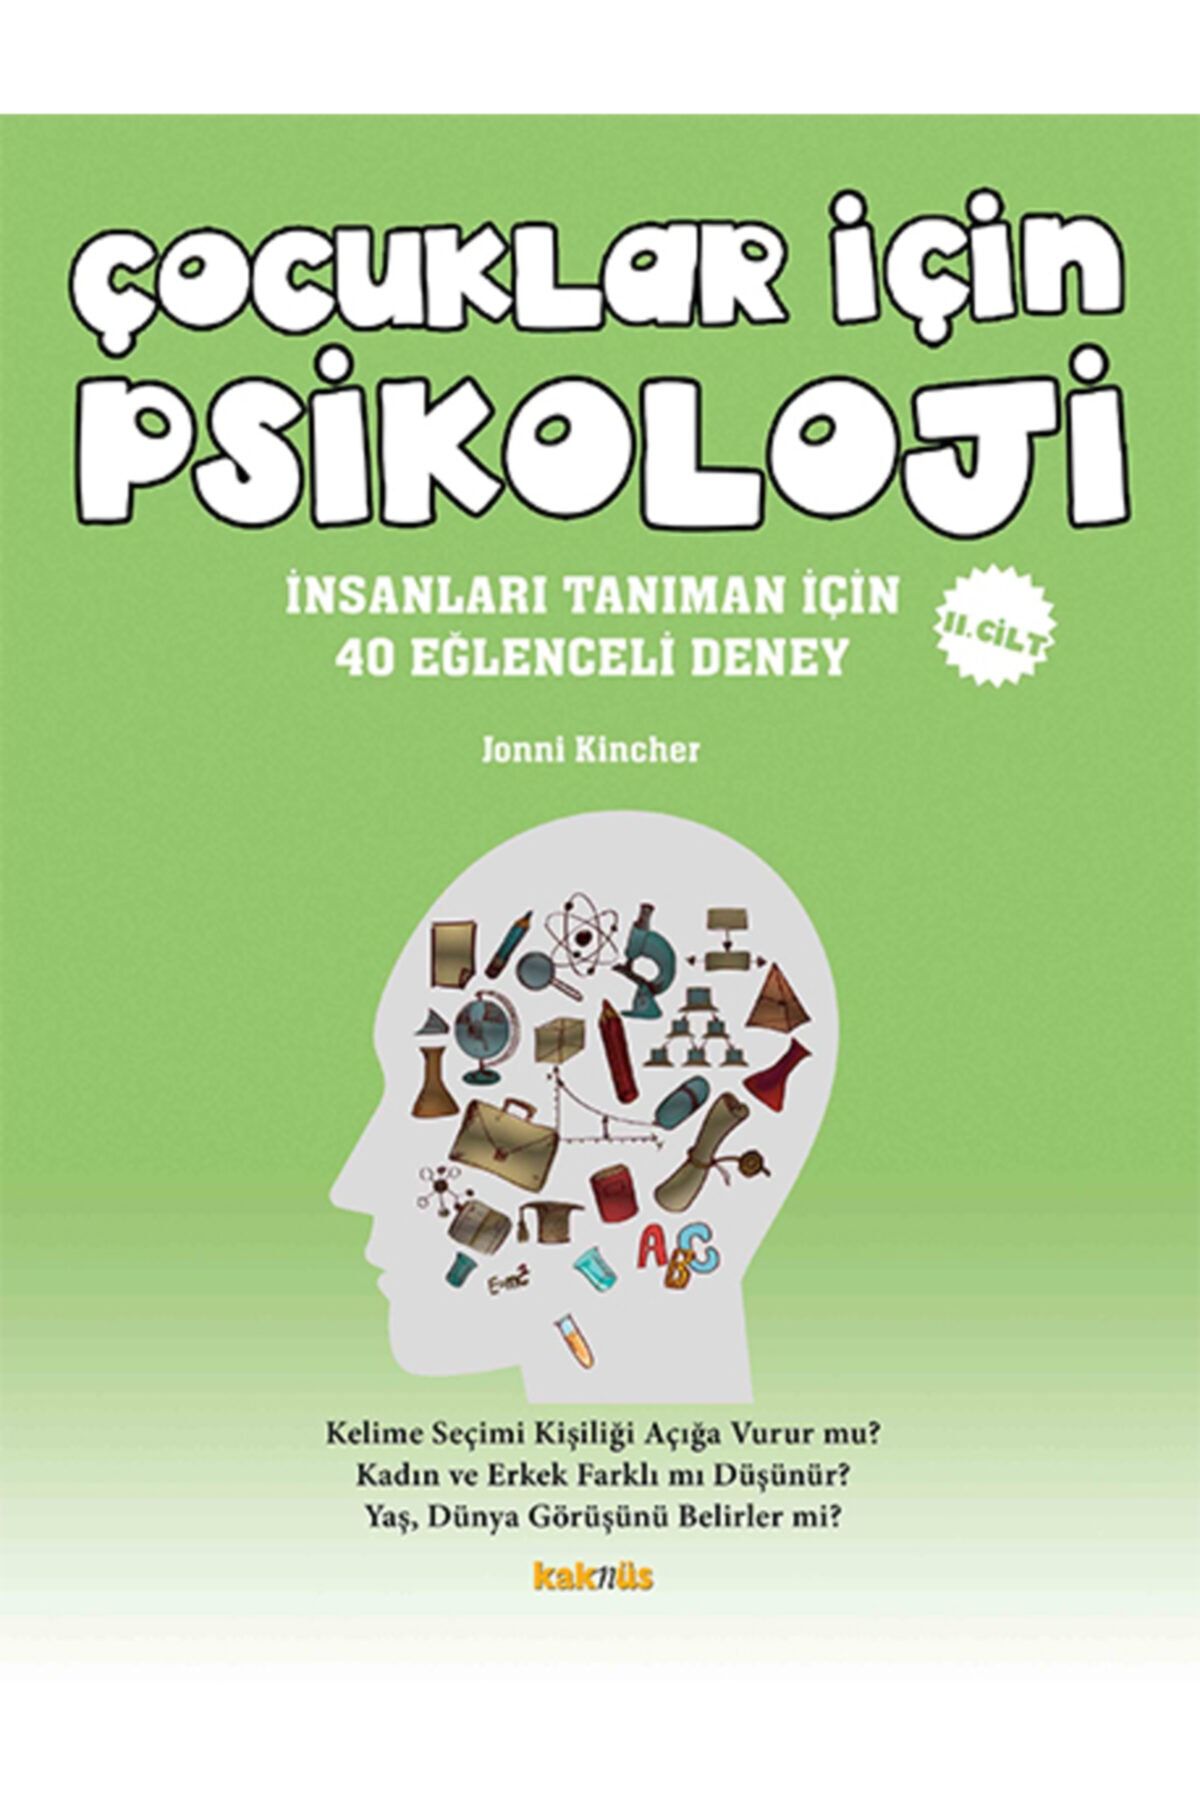 Kaknüs Yayınları - Ders Kitapları Çocuklar Için Psikoloji 2.cilt - Insanları Tanıman Için 40 Eğlenceli Deney